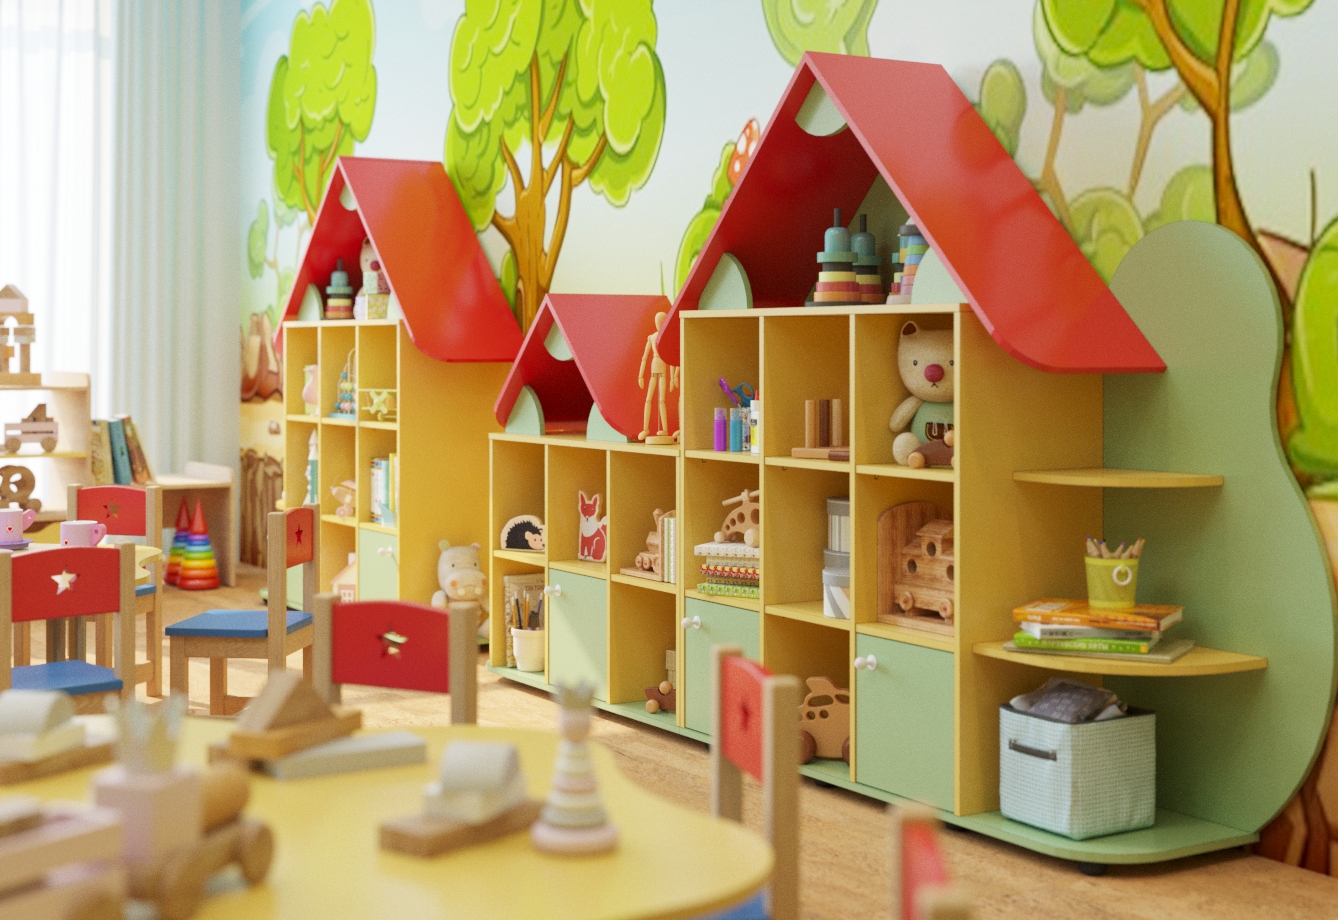 Сайт детской мебели для детских садов. Мебель для детского сада. Детская мебель для детского сада. Современная мебель для детского сада. Мебель для группы детского сада.